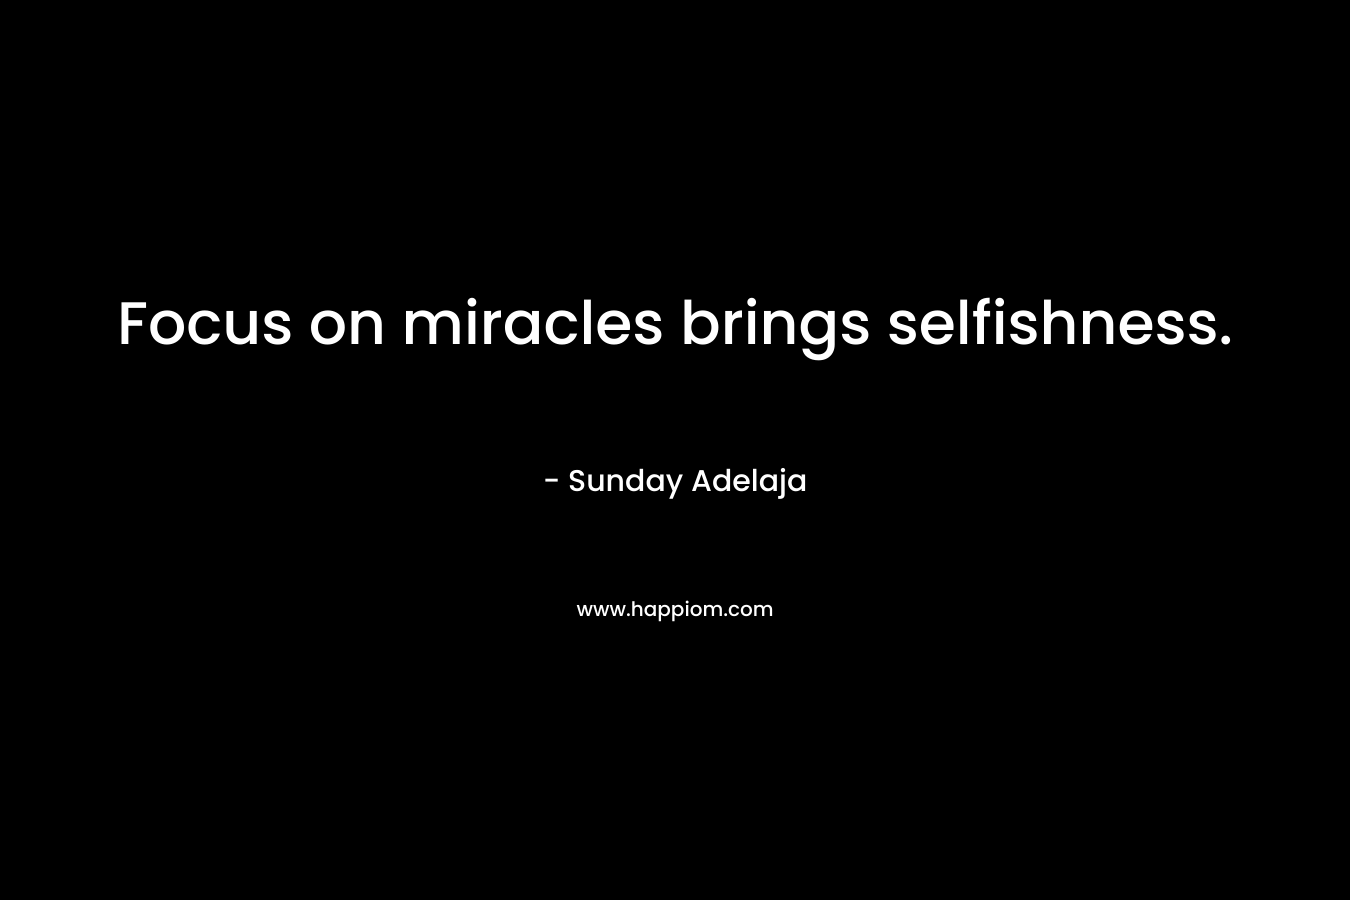 Focus on miracles brings selfishness.